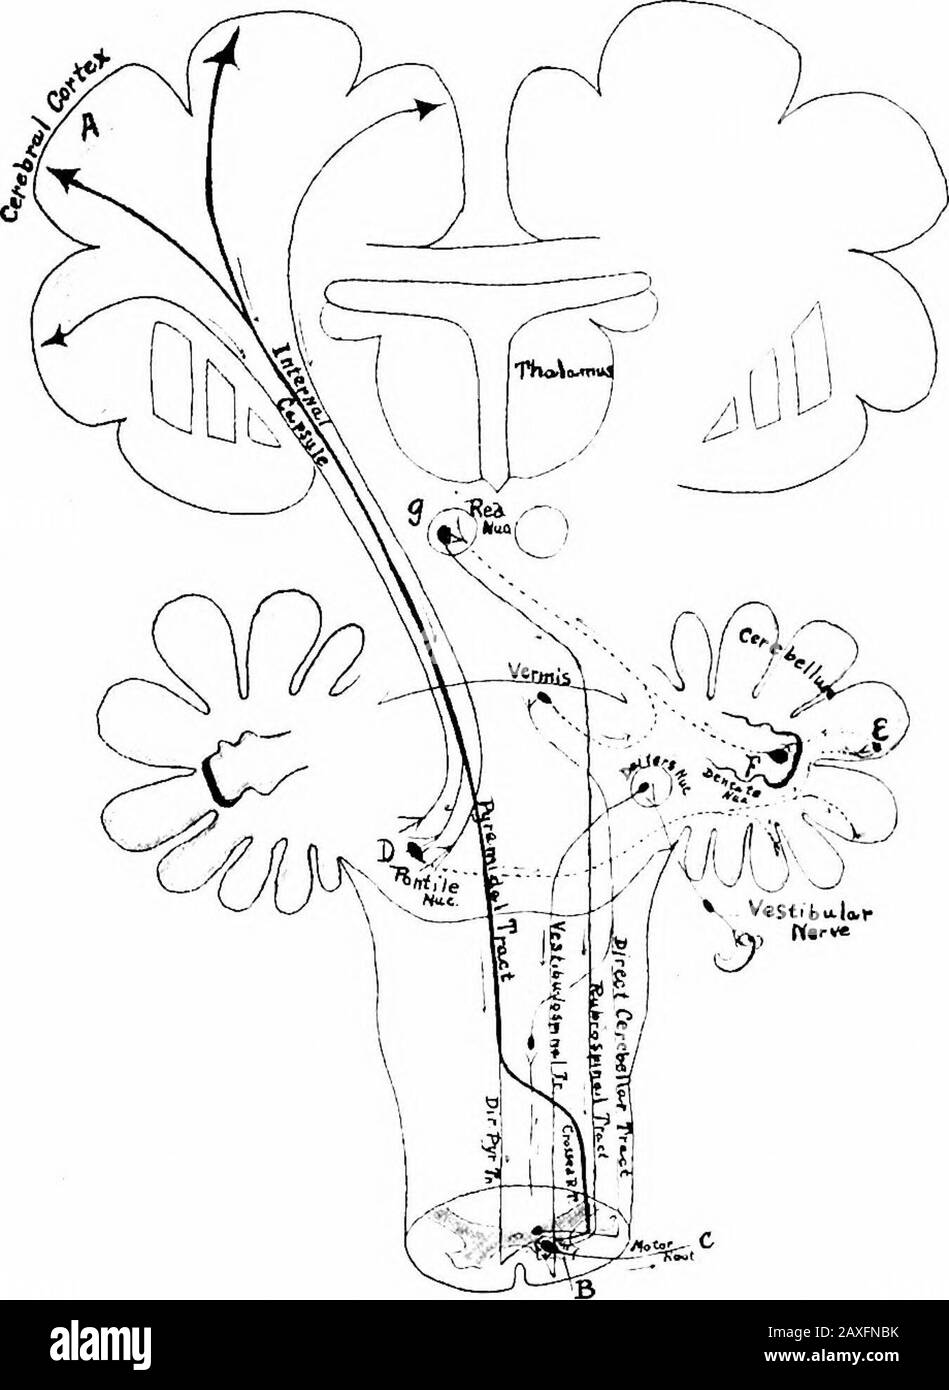 Ein Handbuch der Anatomie . durch die innere Kapsel der Corona radiata, die den mittleren Teil davon einnimmt; sie enterben die Kruste des Crus cerebri, dann das Tegmentum der pons und den ventralen Bereich der Oblongata; In diesen drei Regionen gehen einige der Itsfasern an die Hirnnervenkerne des Ursprungs über. An der kaudalen Endstelle der Oblongata 85 bis 90 Prozent, von den Fasern decussieren zur Opositseite des Rückenmarks als der gekreuzte Pyramidentrakt und thenend auf verschiedenen Ebenen um die Zellen des Ventralhorns. Theremaining-Fasern setzen sich auf derselben Seite des Rückenmarks fort, so die Stockfoto